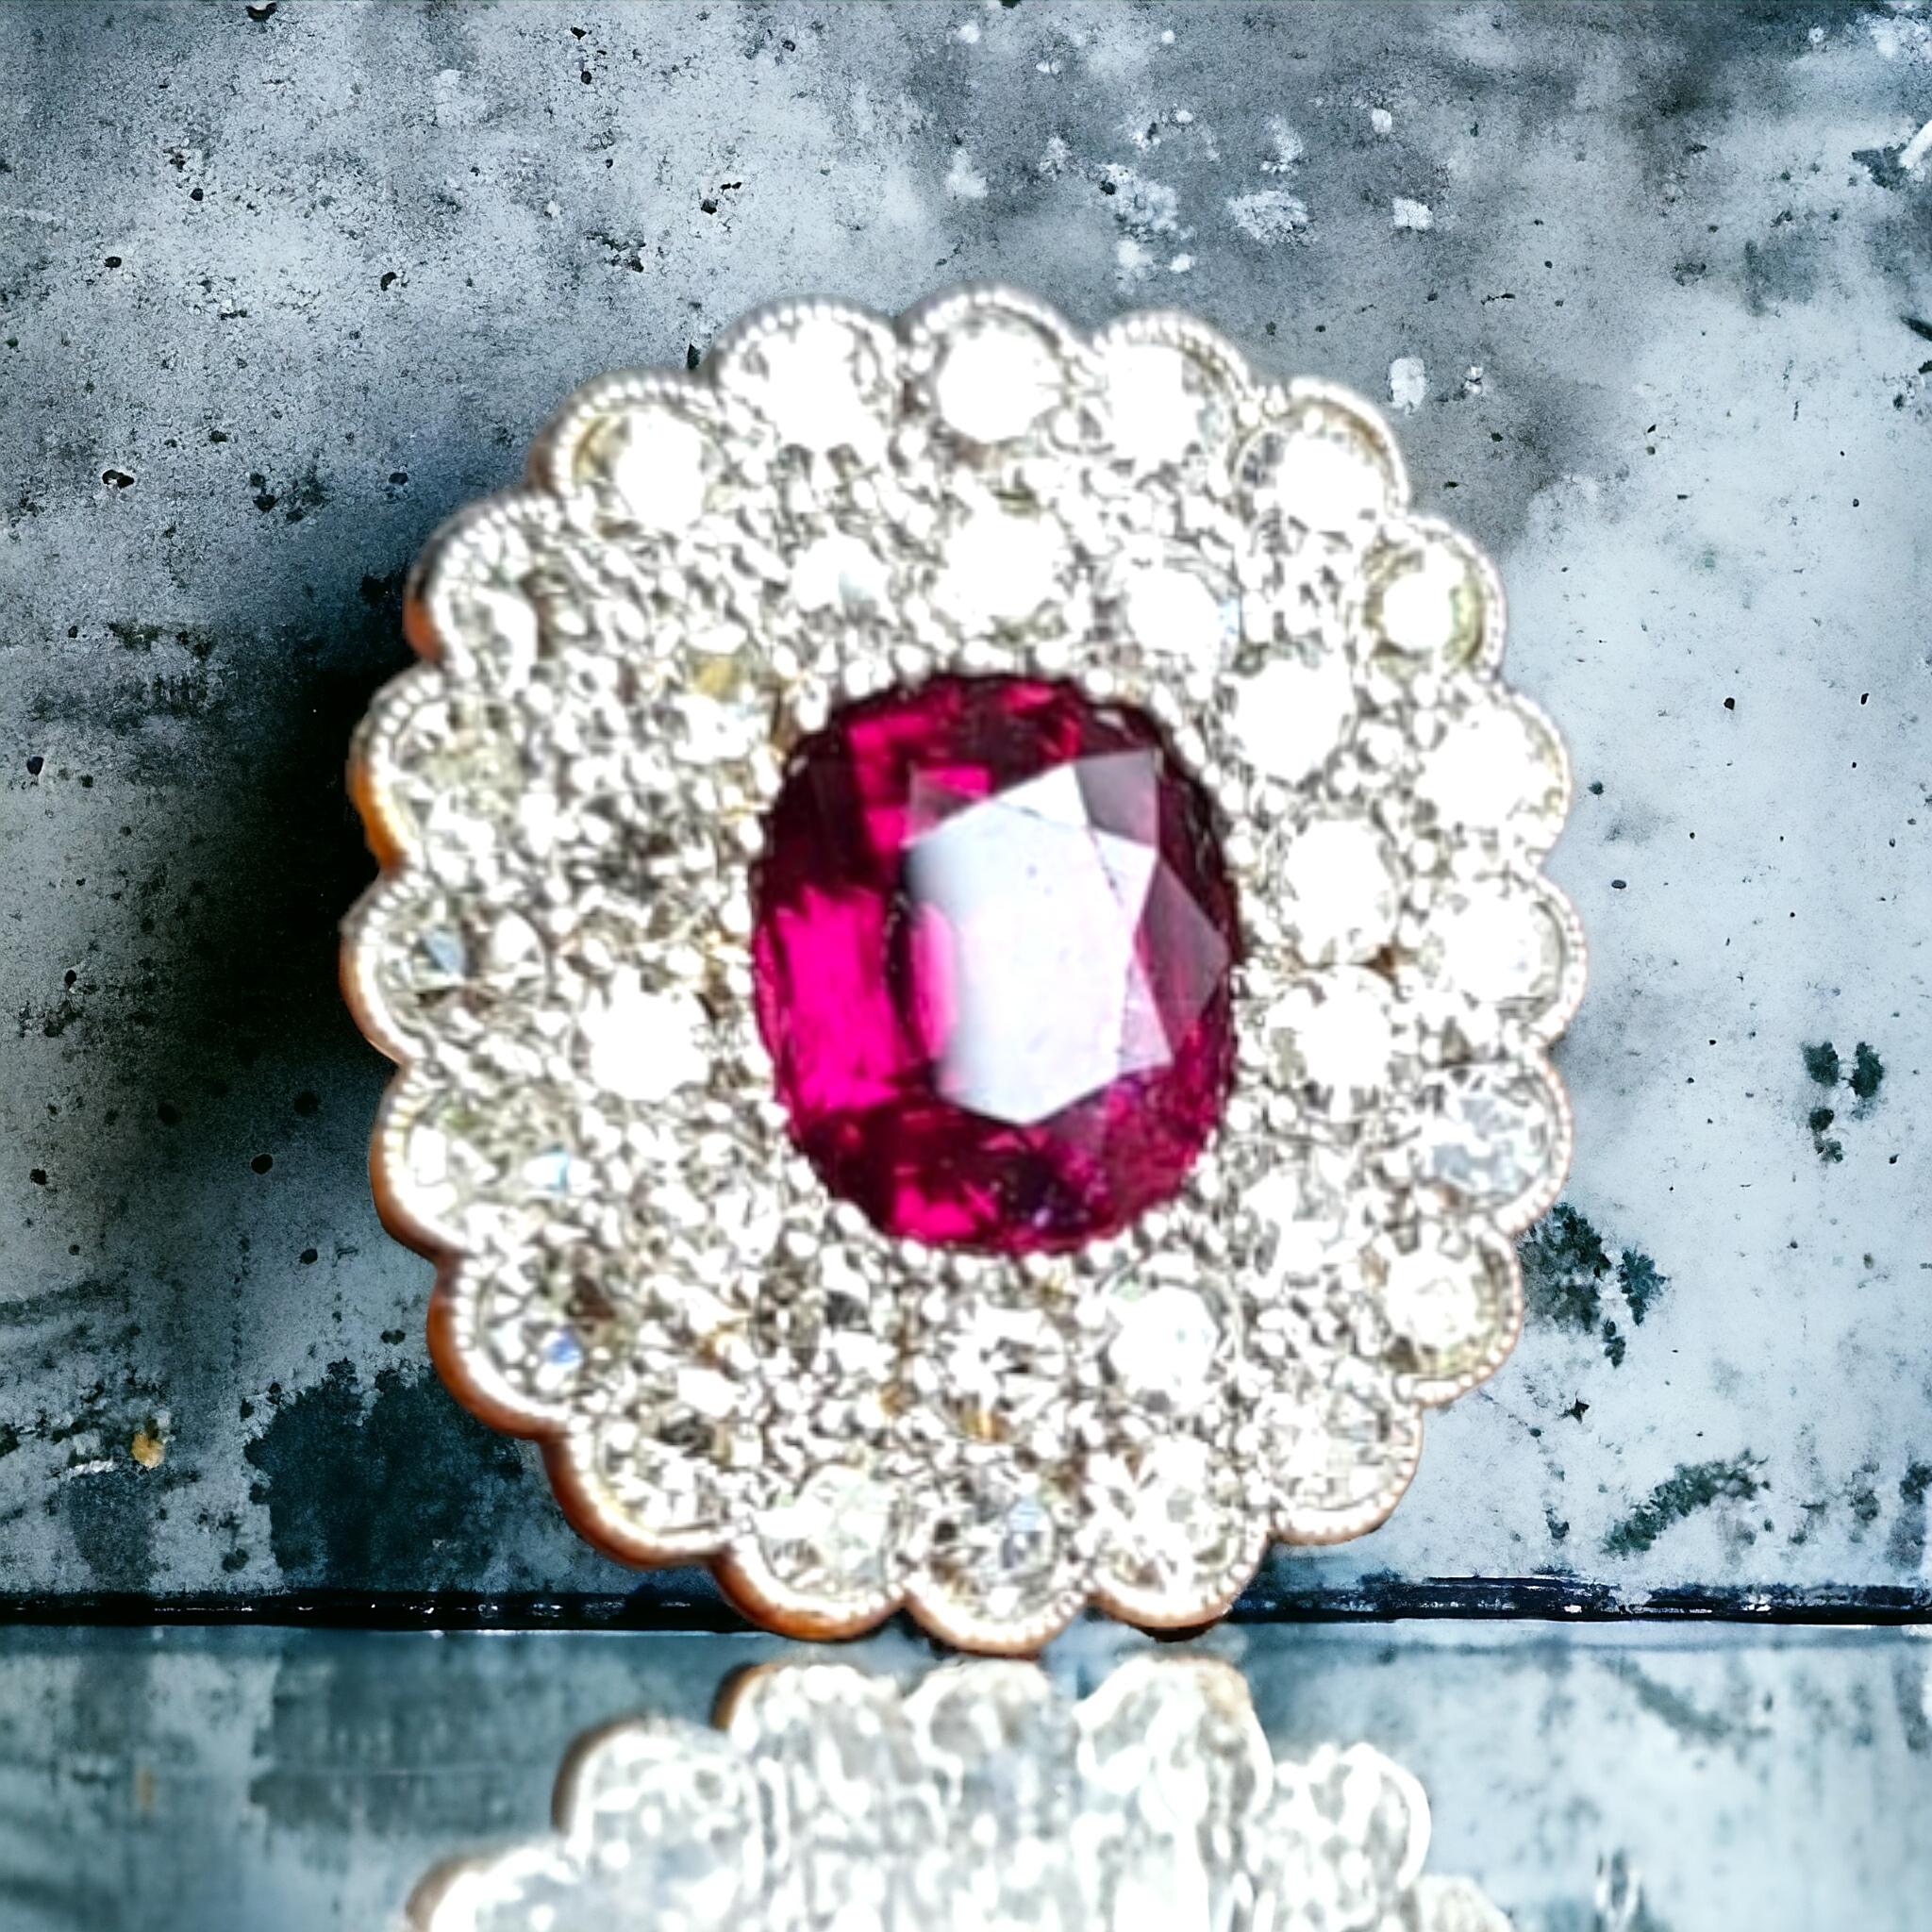 Bague Art-Déco non traitée, non chauffée de 2,10 carats de rubis naturel rouge vif et de diamants en grappe.

Le rubis taillé en ovale, d'une clarté exceptionnelle et d'une couleur rouge vif, est entouré d'un double cercle de diamants taillés en une